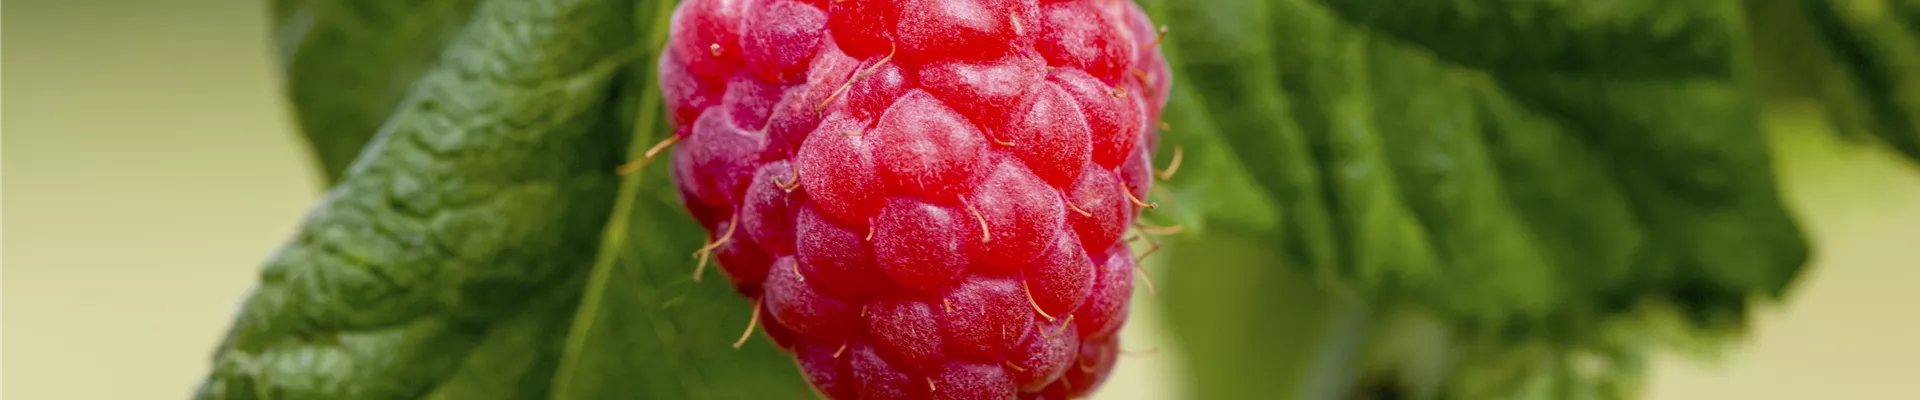 Rubus idaeus & Rubus fruticosus